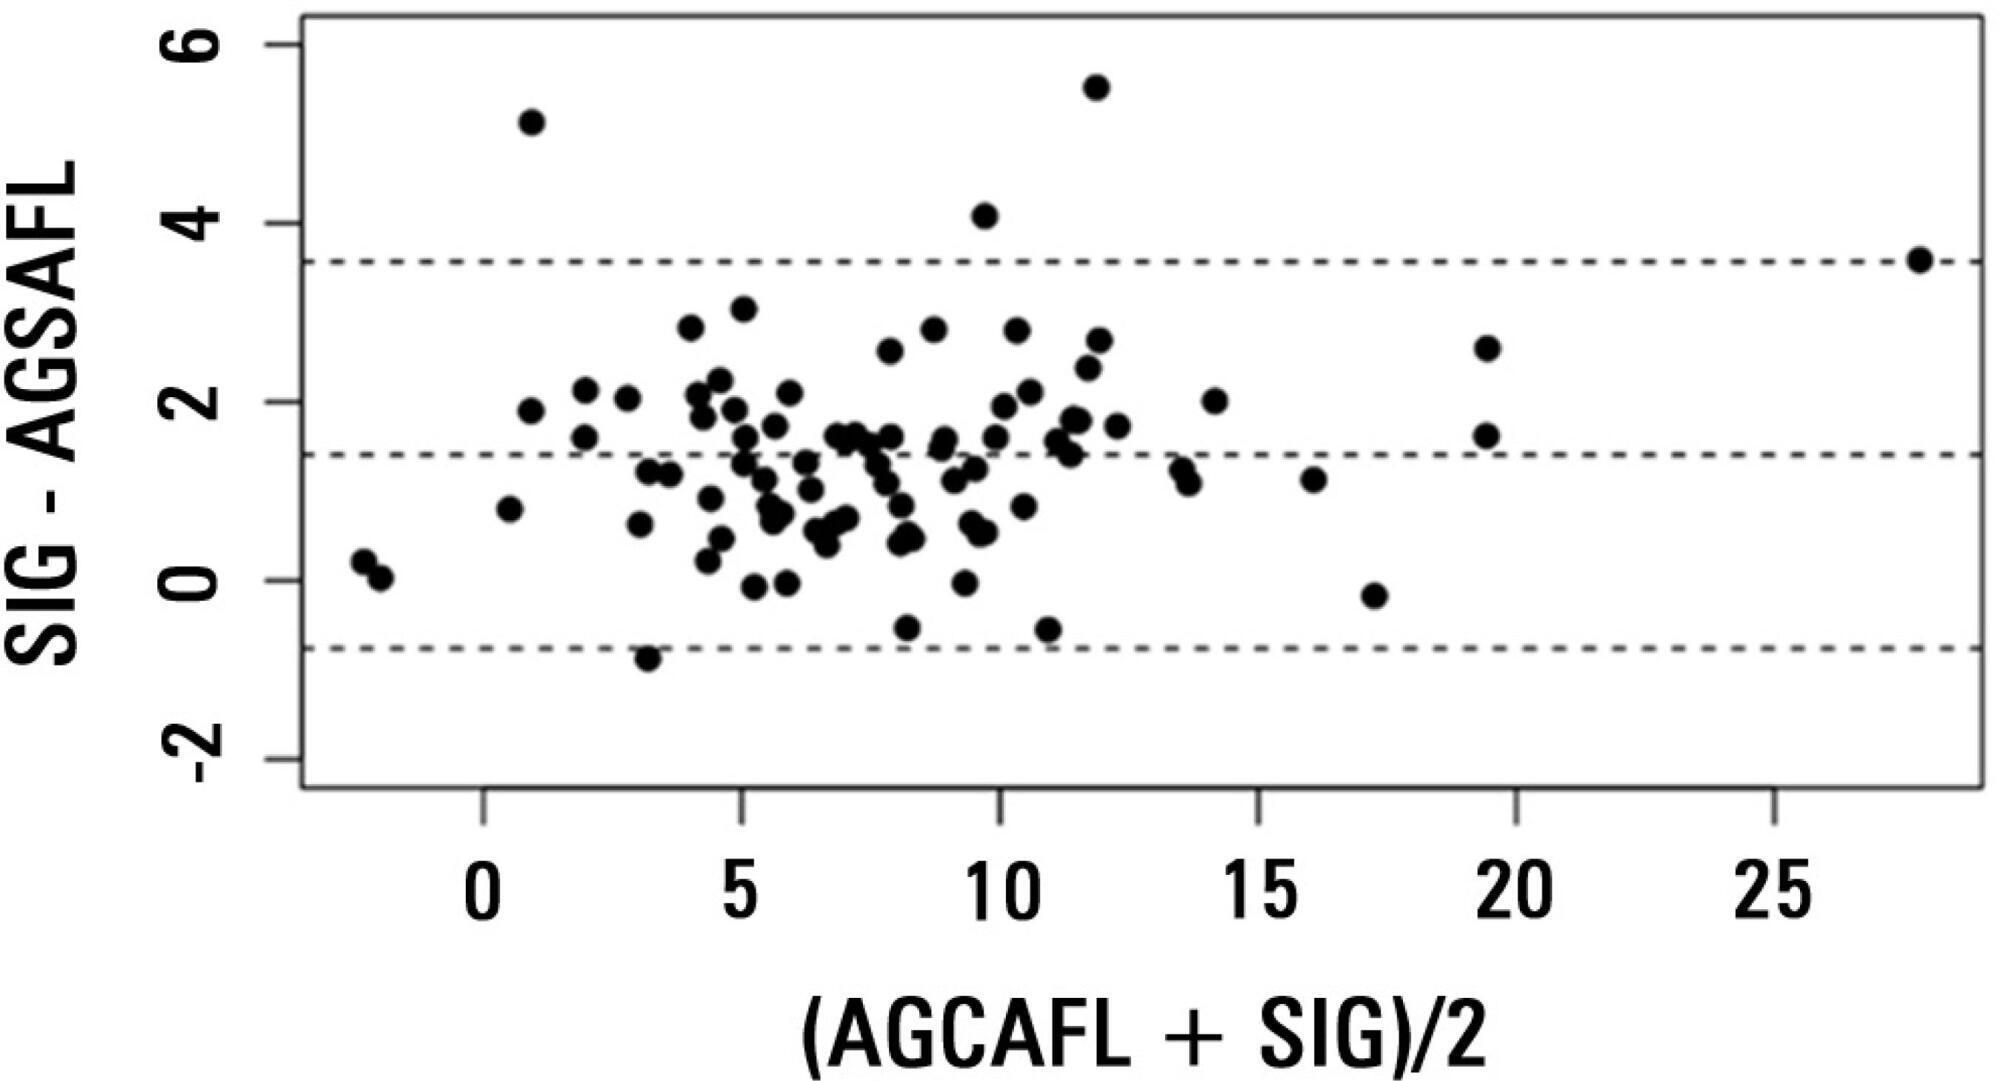 Ânion gap corrigido para albumina, fosfato
               e lactato é um bom preditor de íon gap forte em pacientes enfermos
               graves: estudo de coorte em nicho